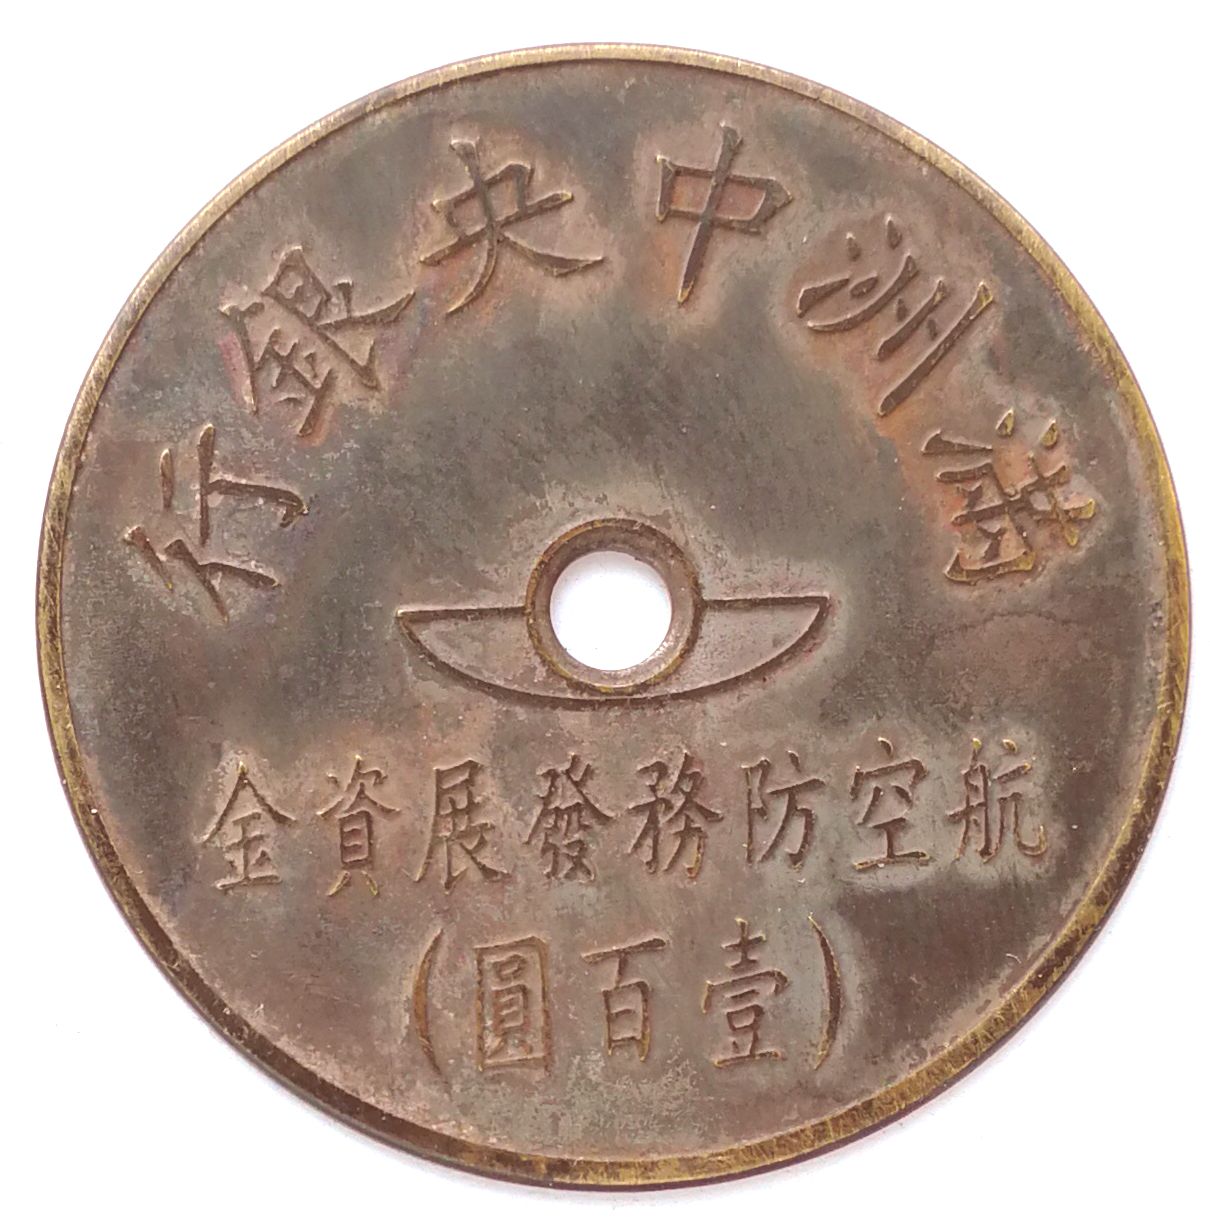 BT514, Manchukuo Aviation Defence Fund, 100 Yen Token, 1945